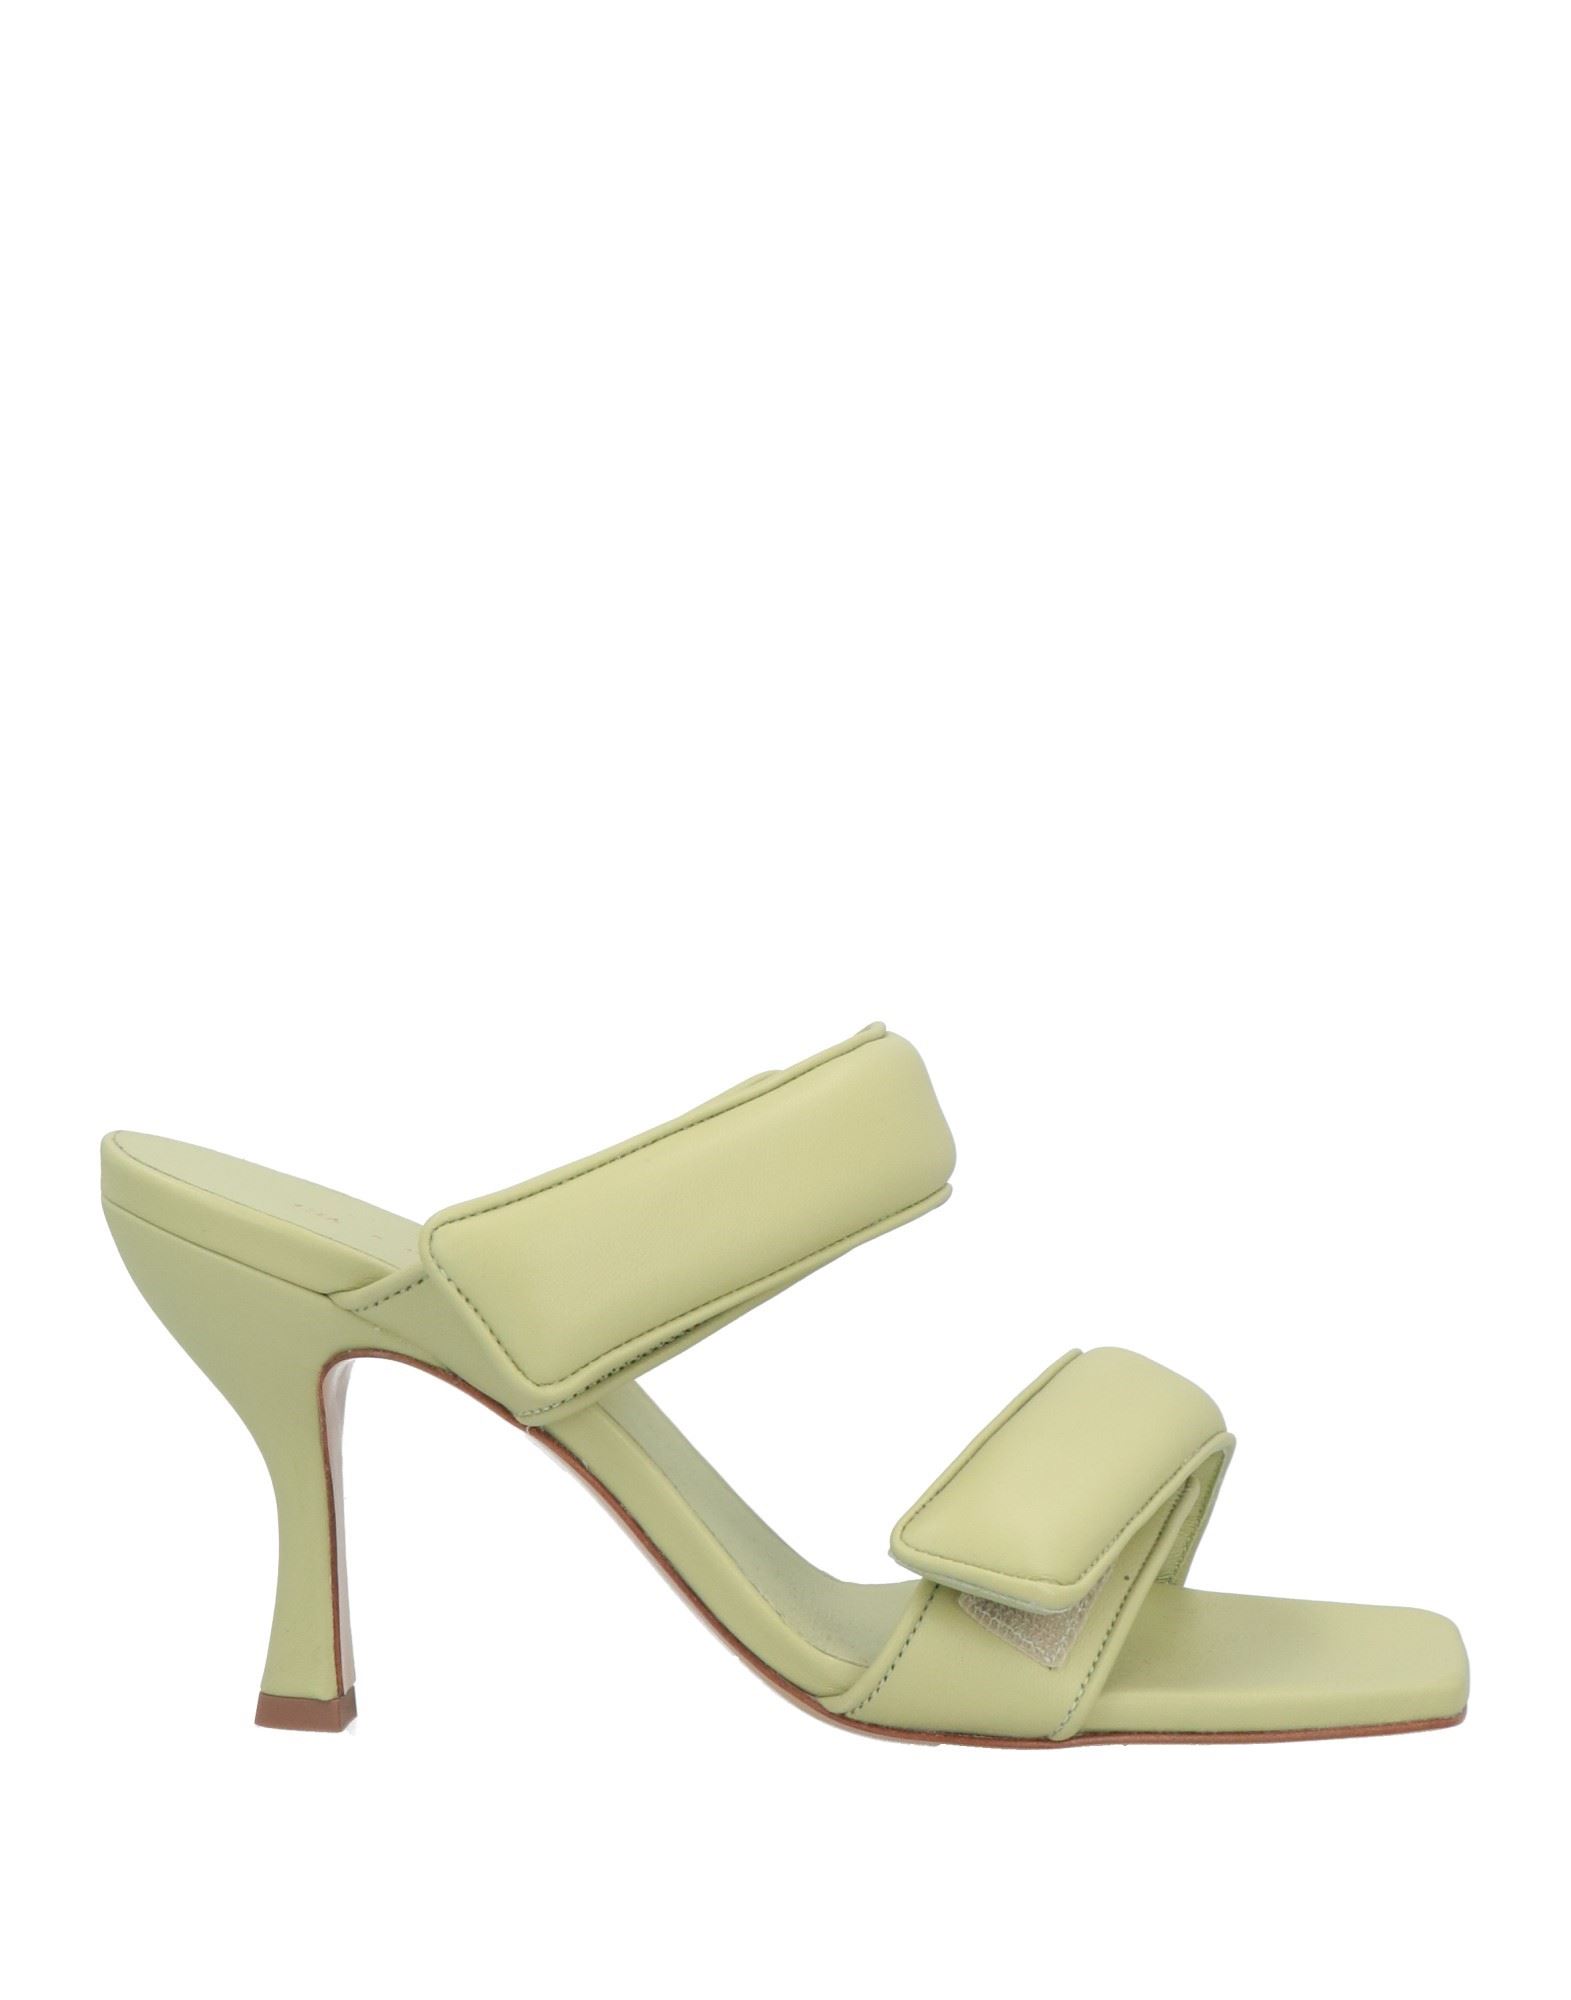 Gia X Pernille Teisbaek Sandals In Green